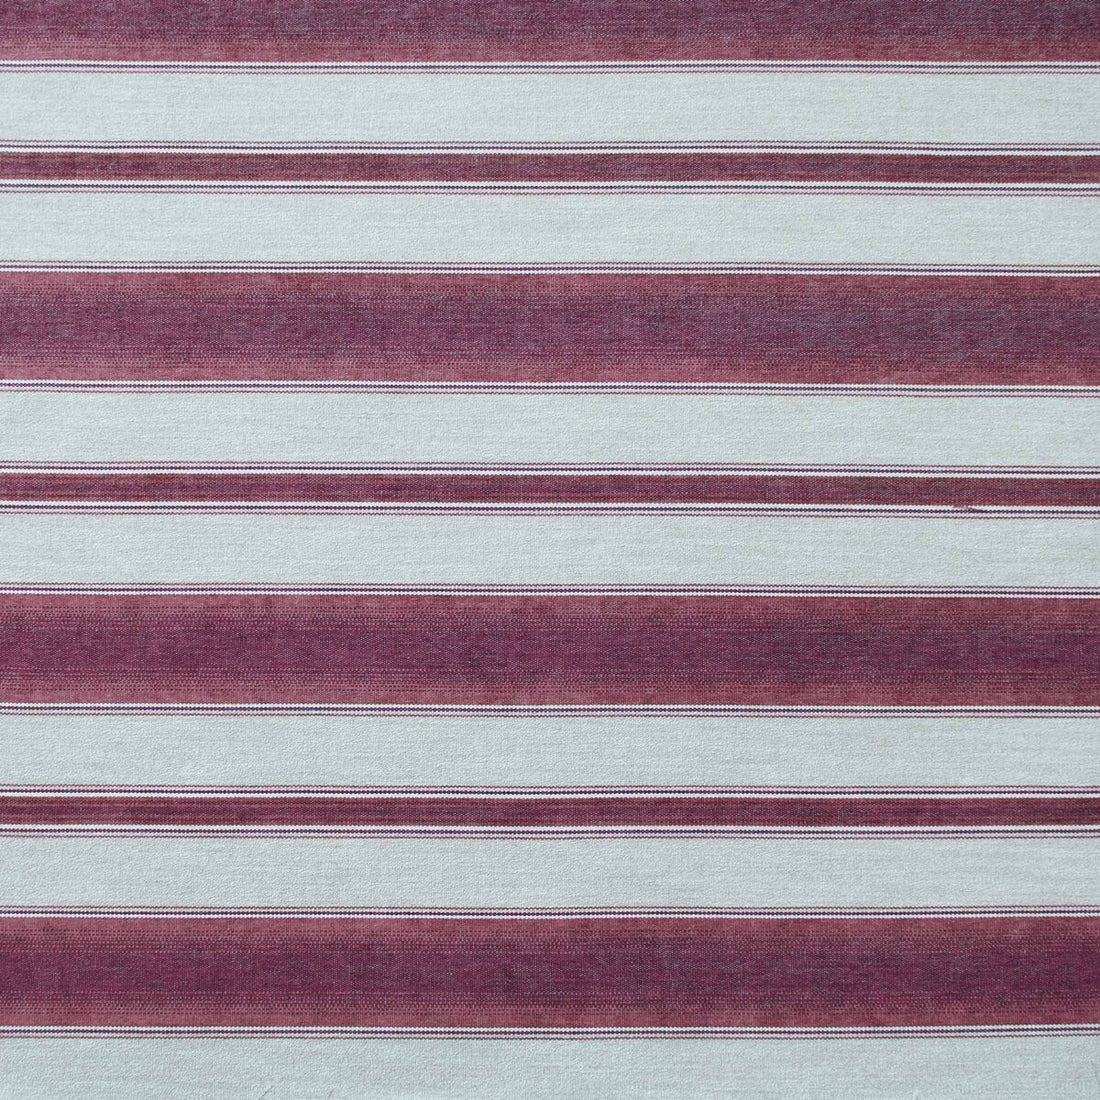 Teodosio fabric in rojo/rosa viejo color - pattern LCT1125.005.0 - by Gaston y Daniela in the Lorenzo Castillo IX Hesperia collection